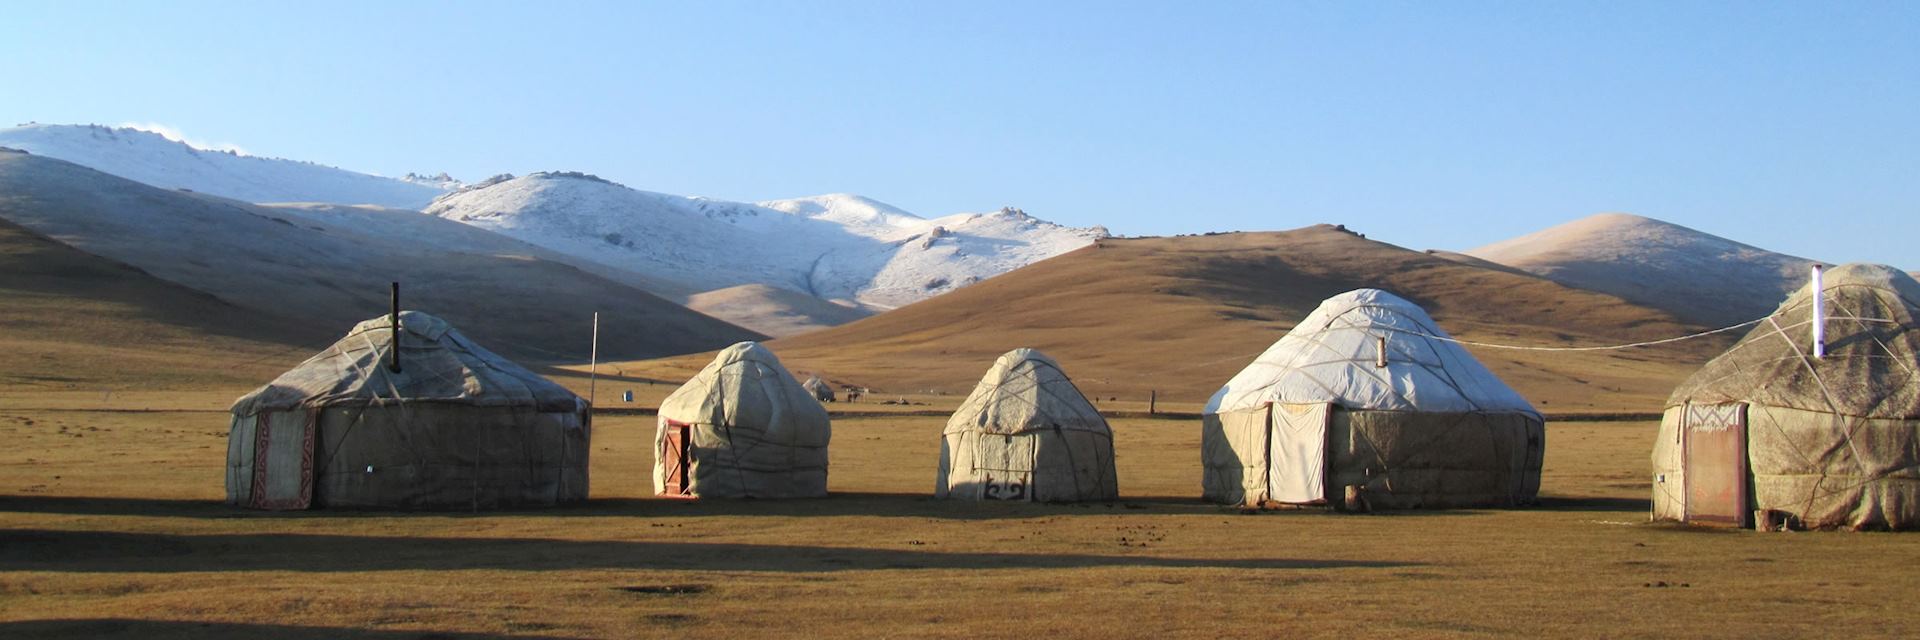 Traditional yurt on Song-Kul Lake